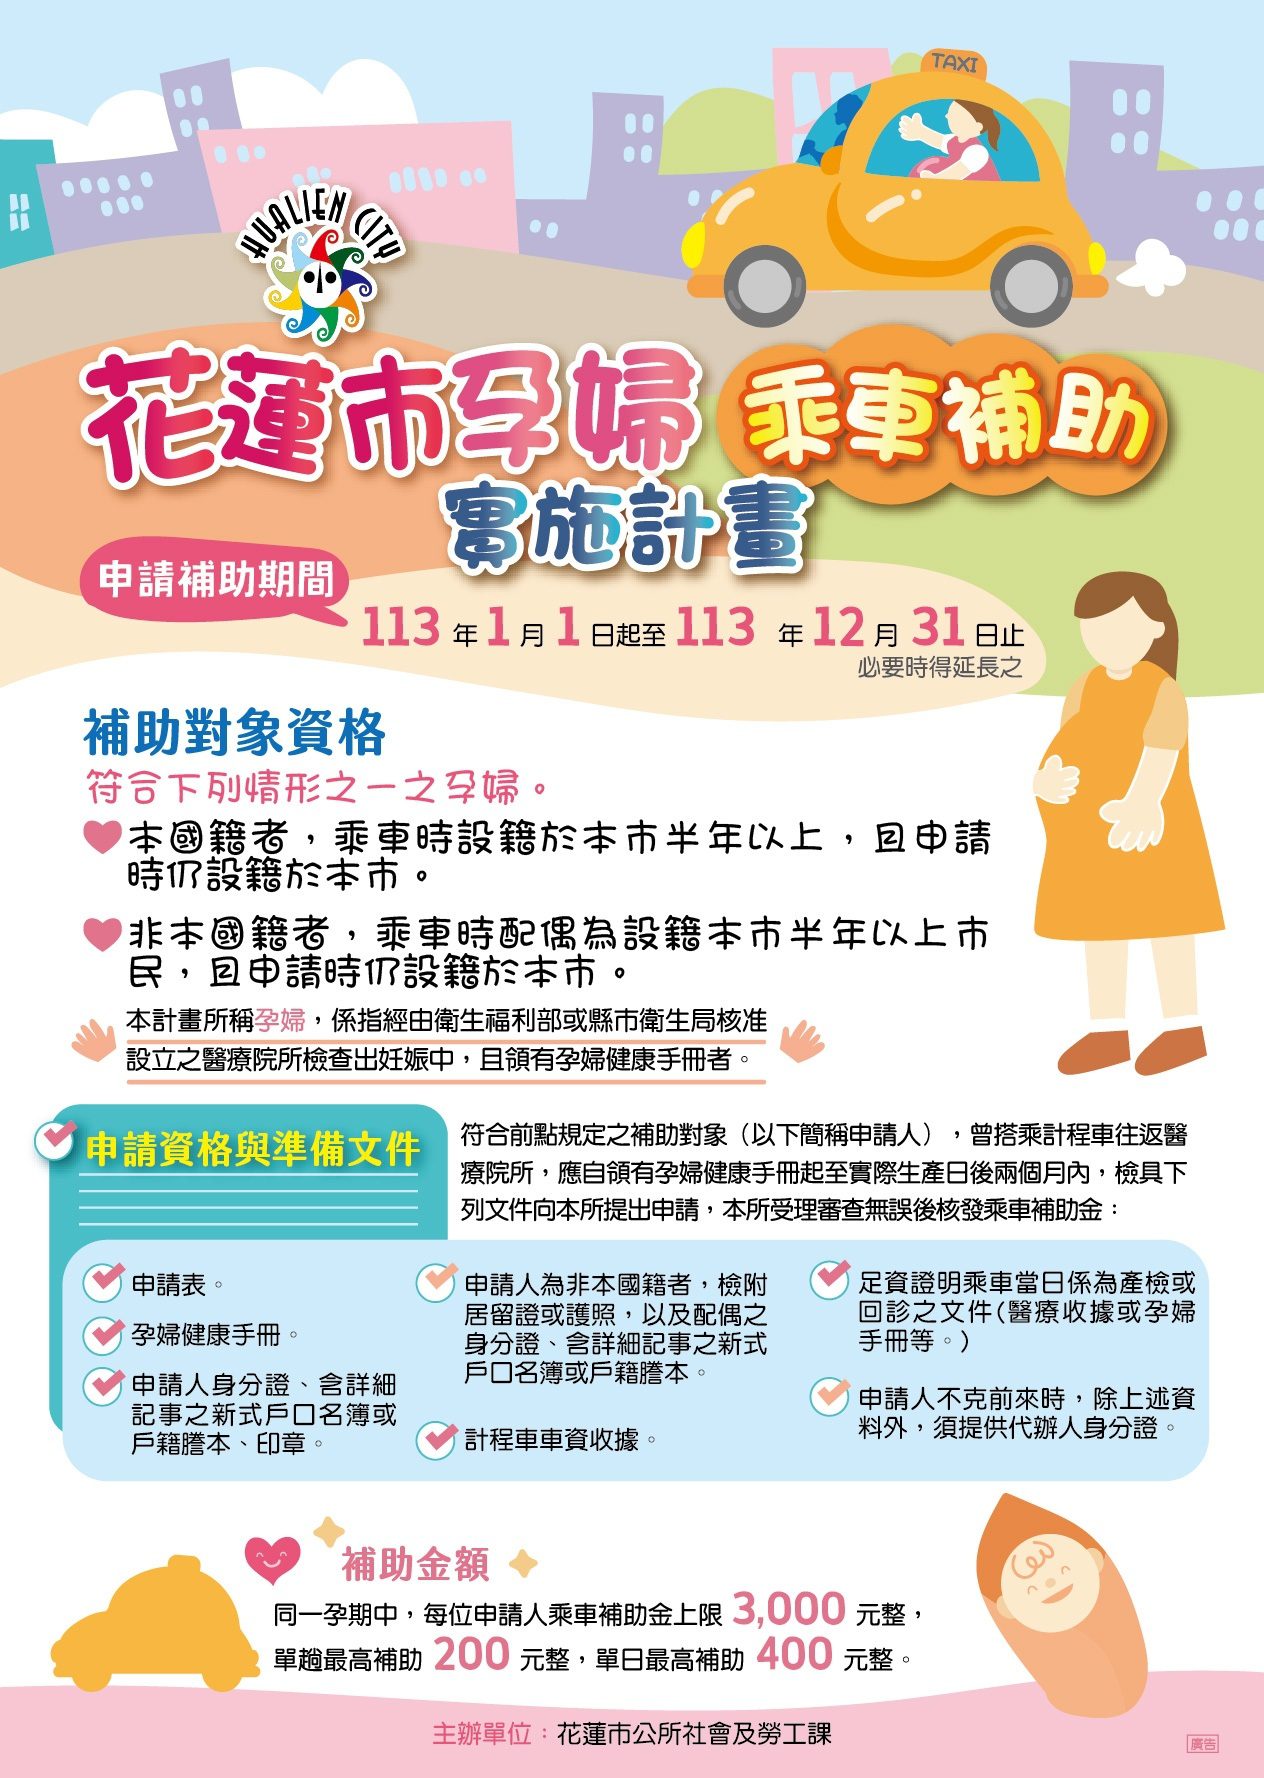 減輕孕婦產檢交通負擔 花蓮市首創孕婦計程車補助 - 早安台灣新聞 | Morning Taiwan News